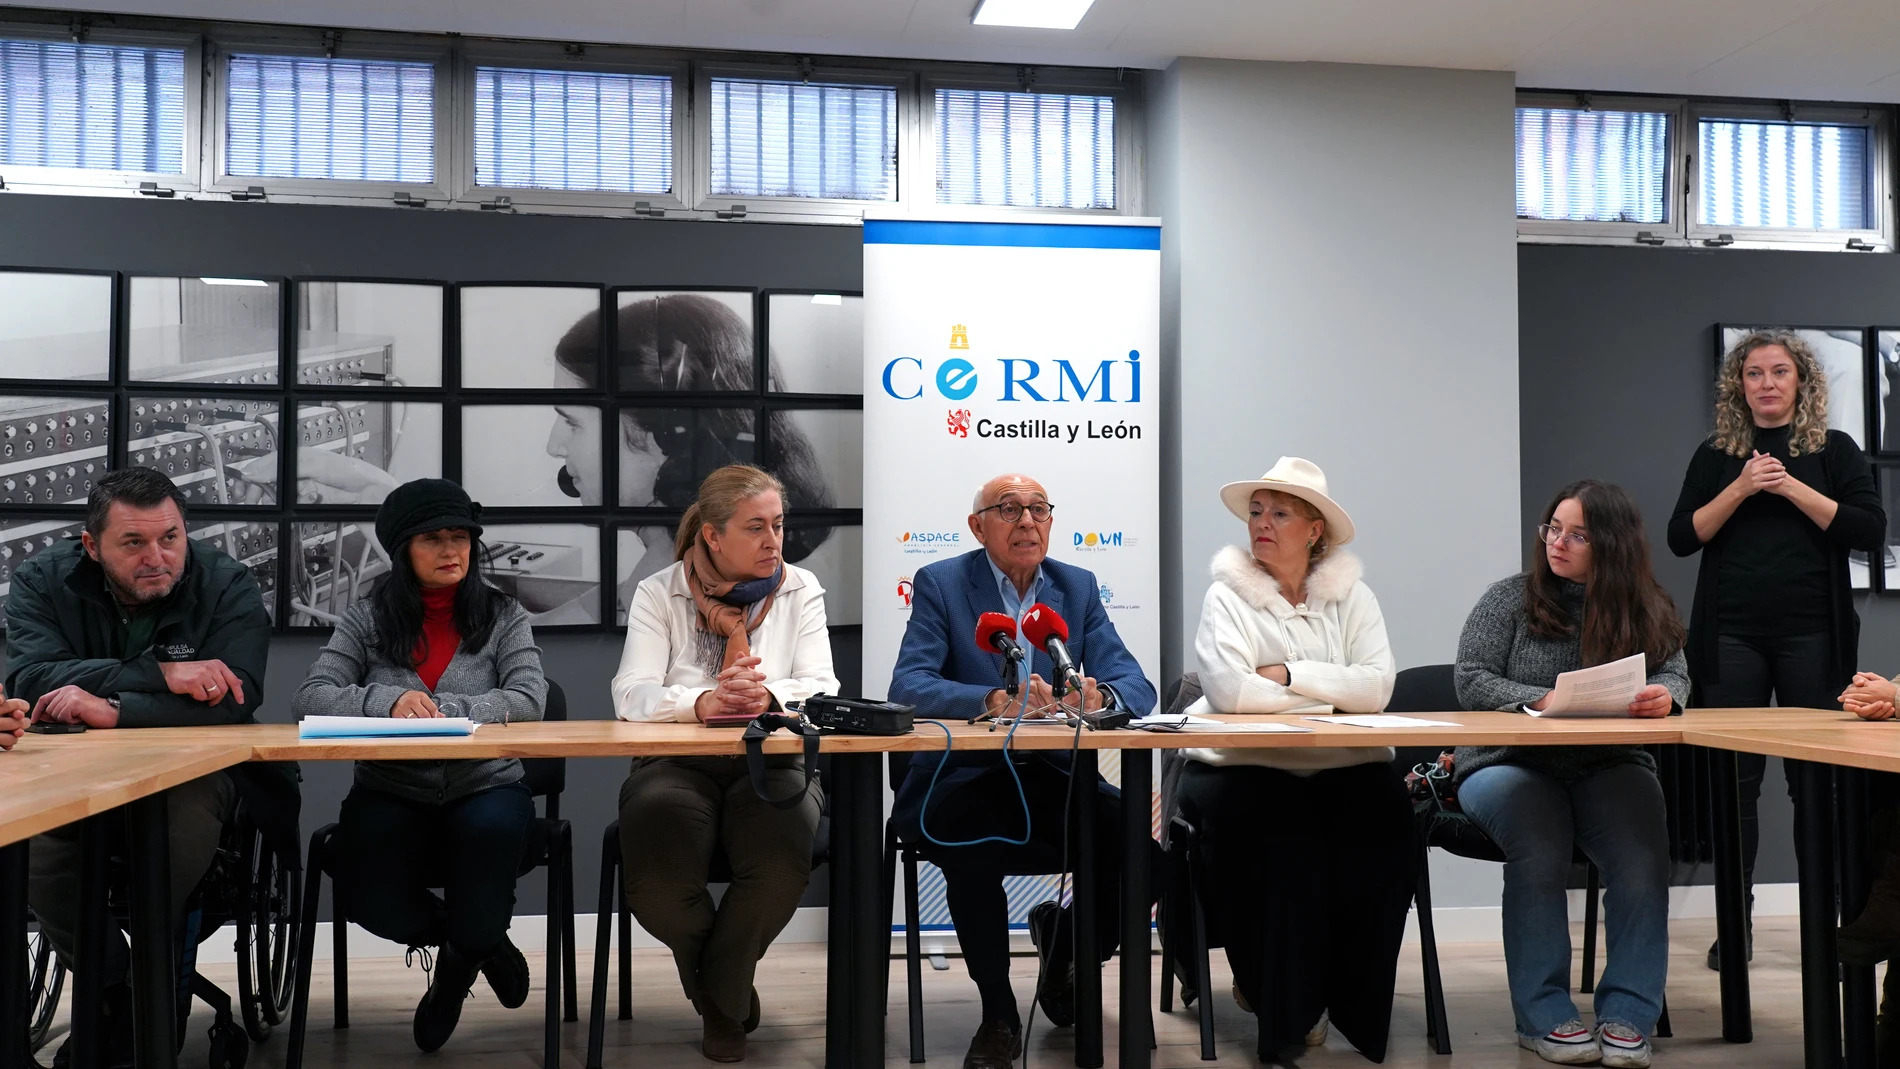 Rueda de prensa de Cermi Castilla y León